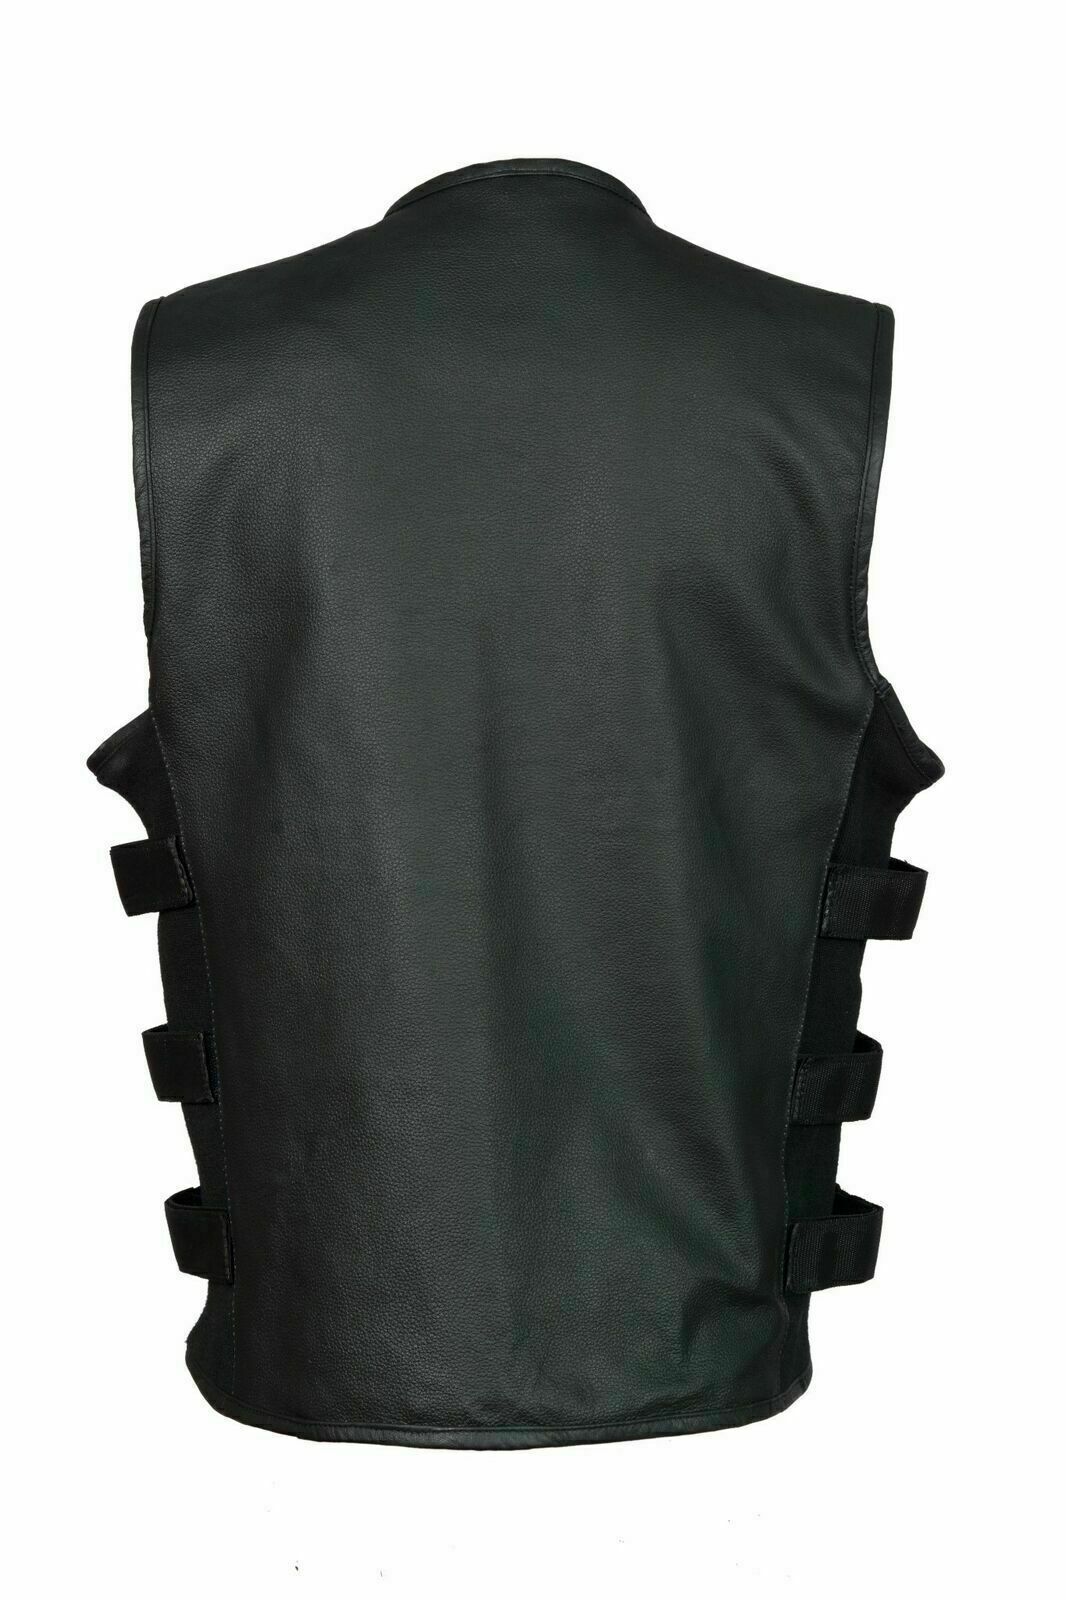 Spine Spark Stylish Biker Leather Vest Two Concealed Gun Pockets